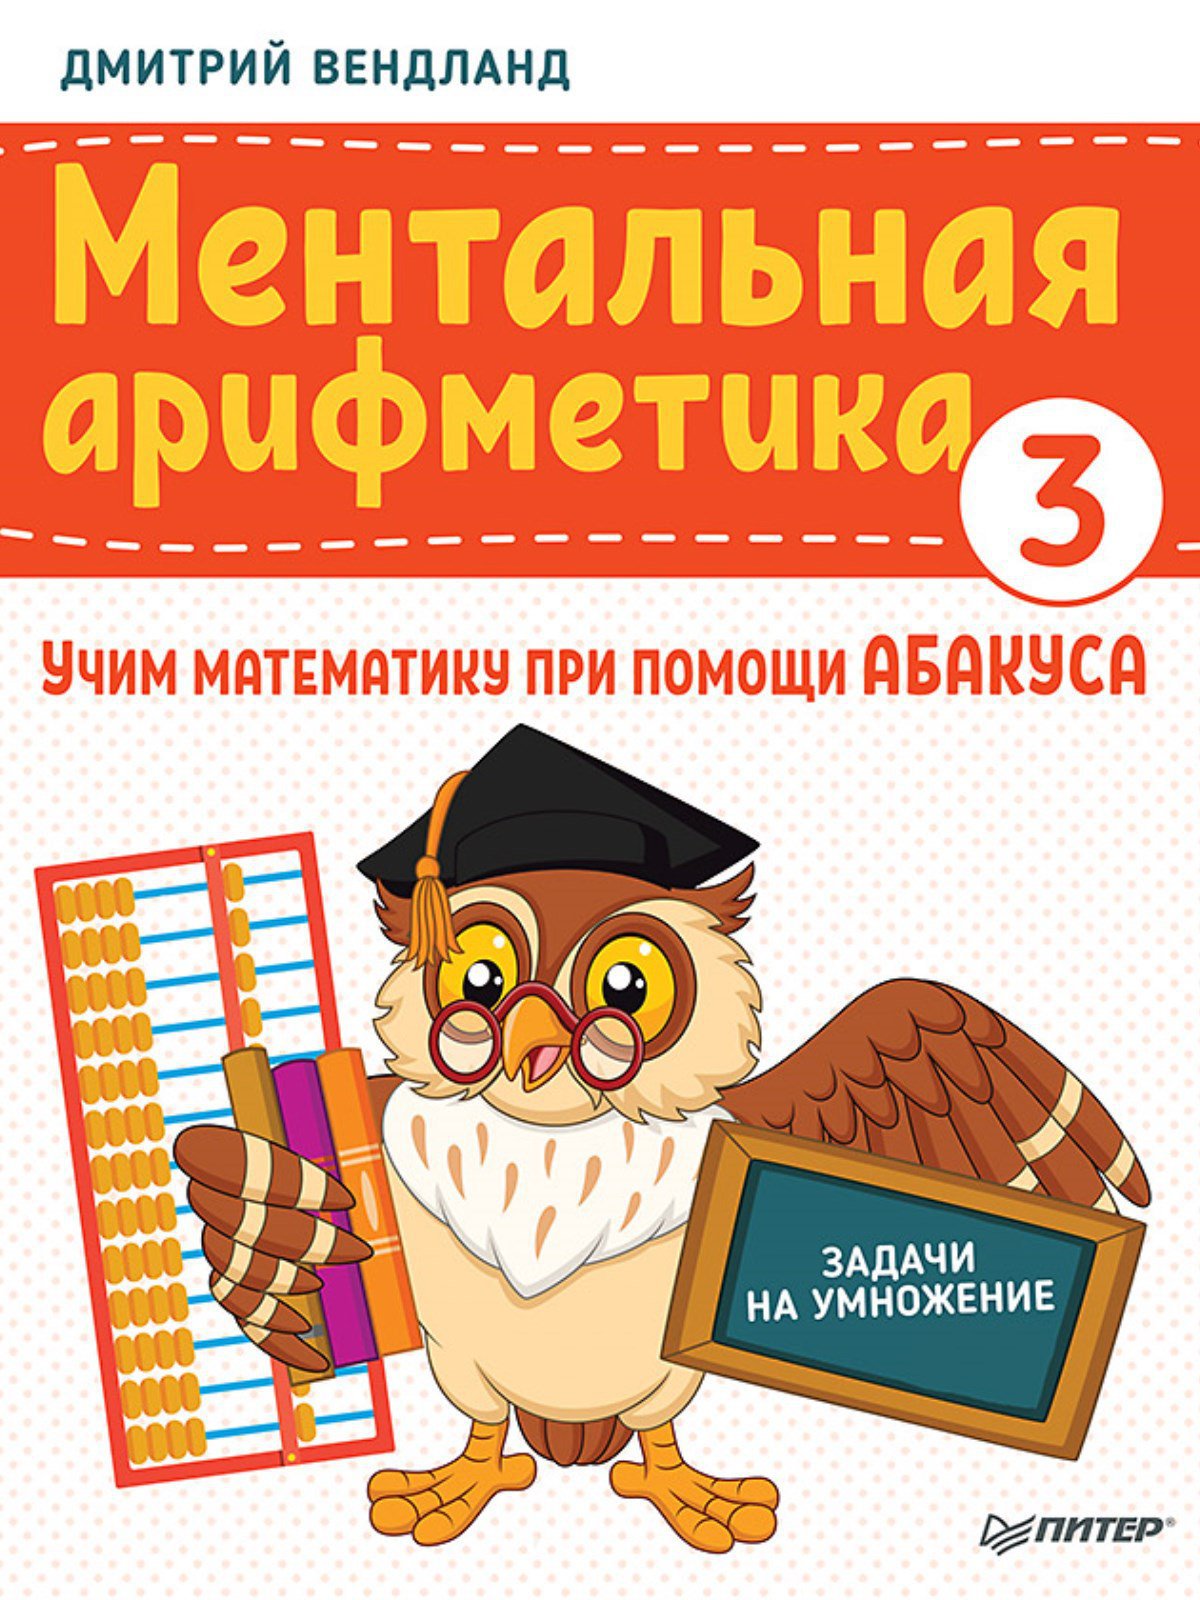 Ментальная арифметика 3: учим математику при помощи абакуса. Задачи на умножение Учим математику при помощи абакуса